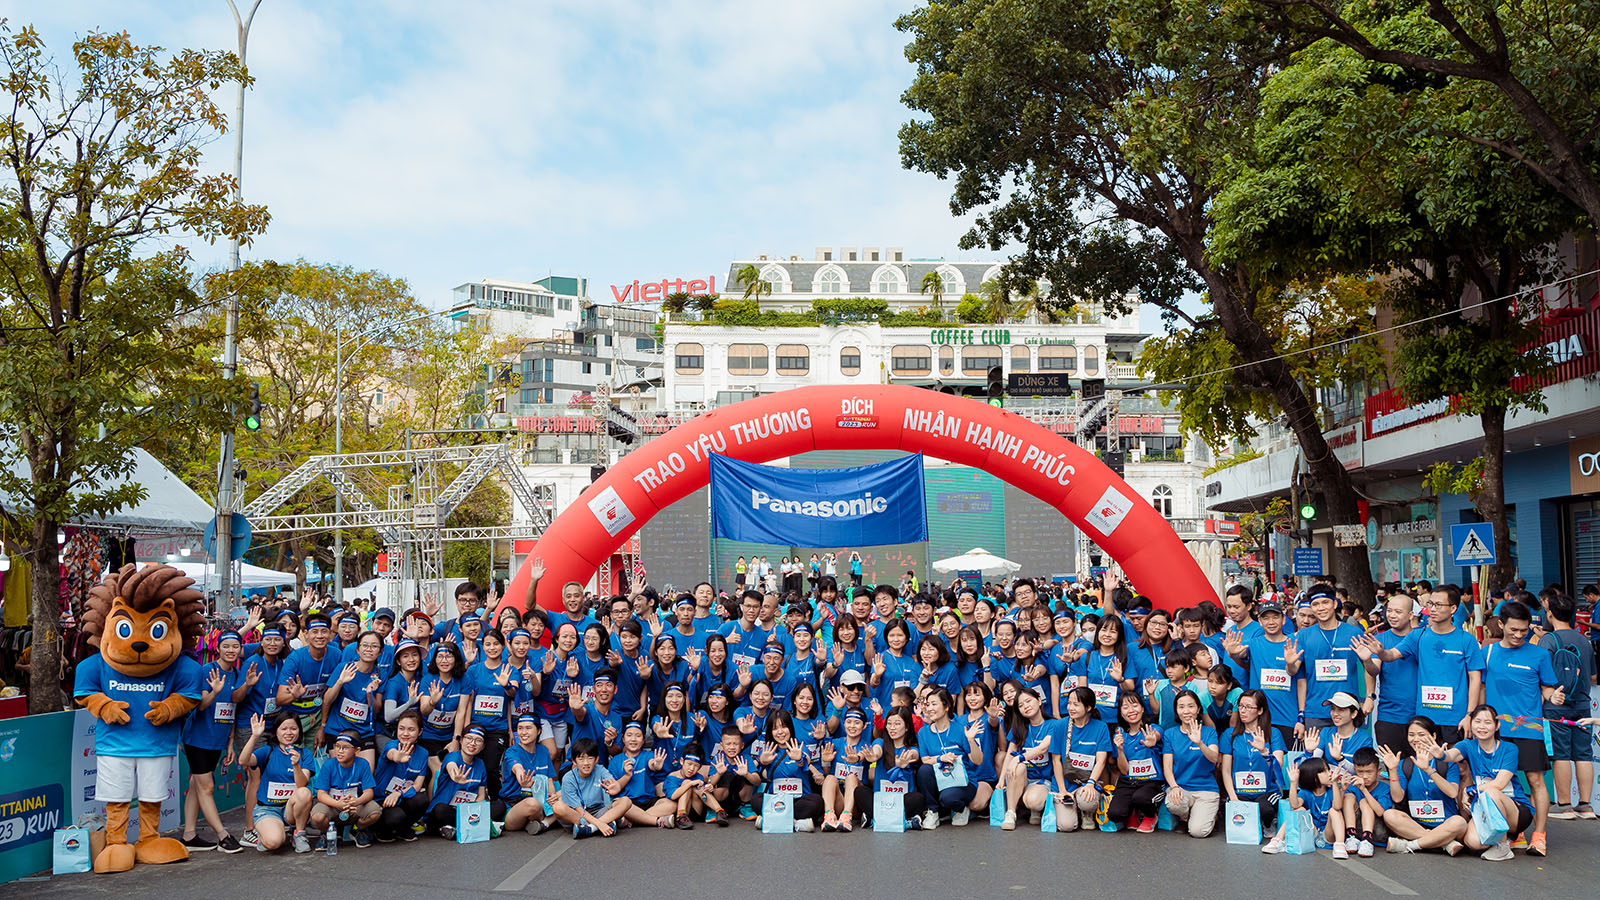 Photo: 250 runners from Panasonic participated in the Mottainai fundraising run